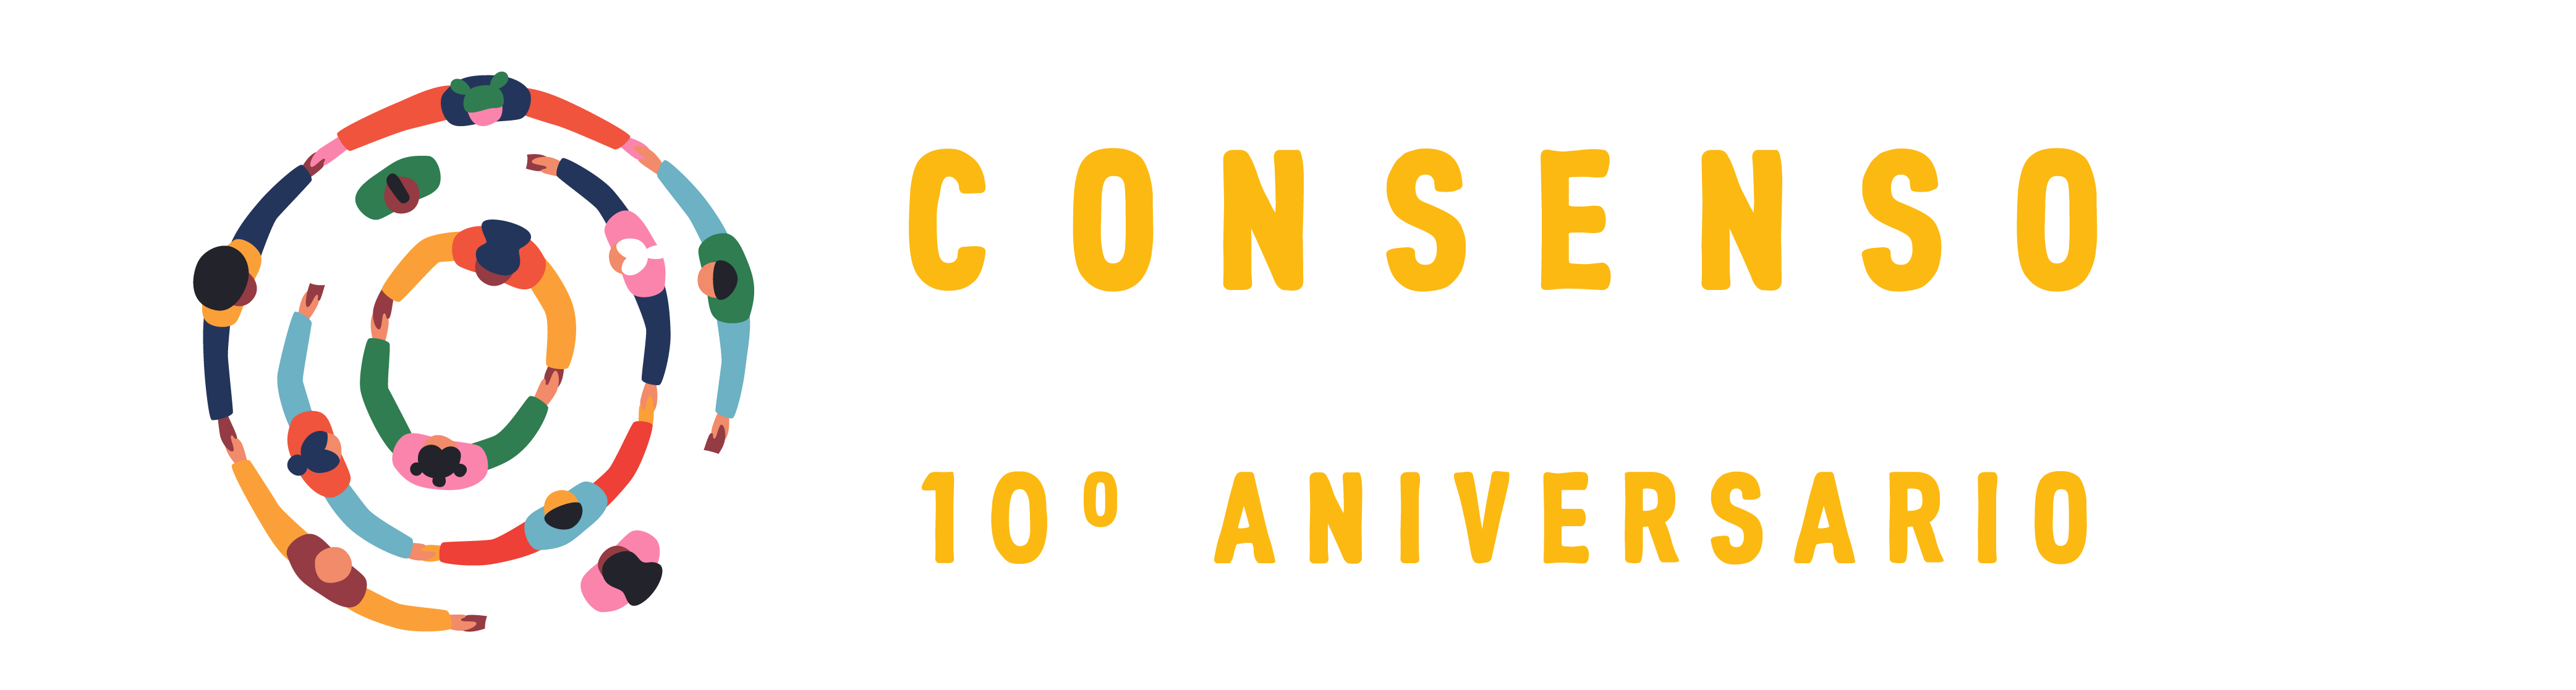 Consenso de Montevideo 10° Aniversario 2013/2023